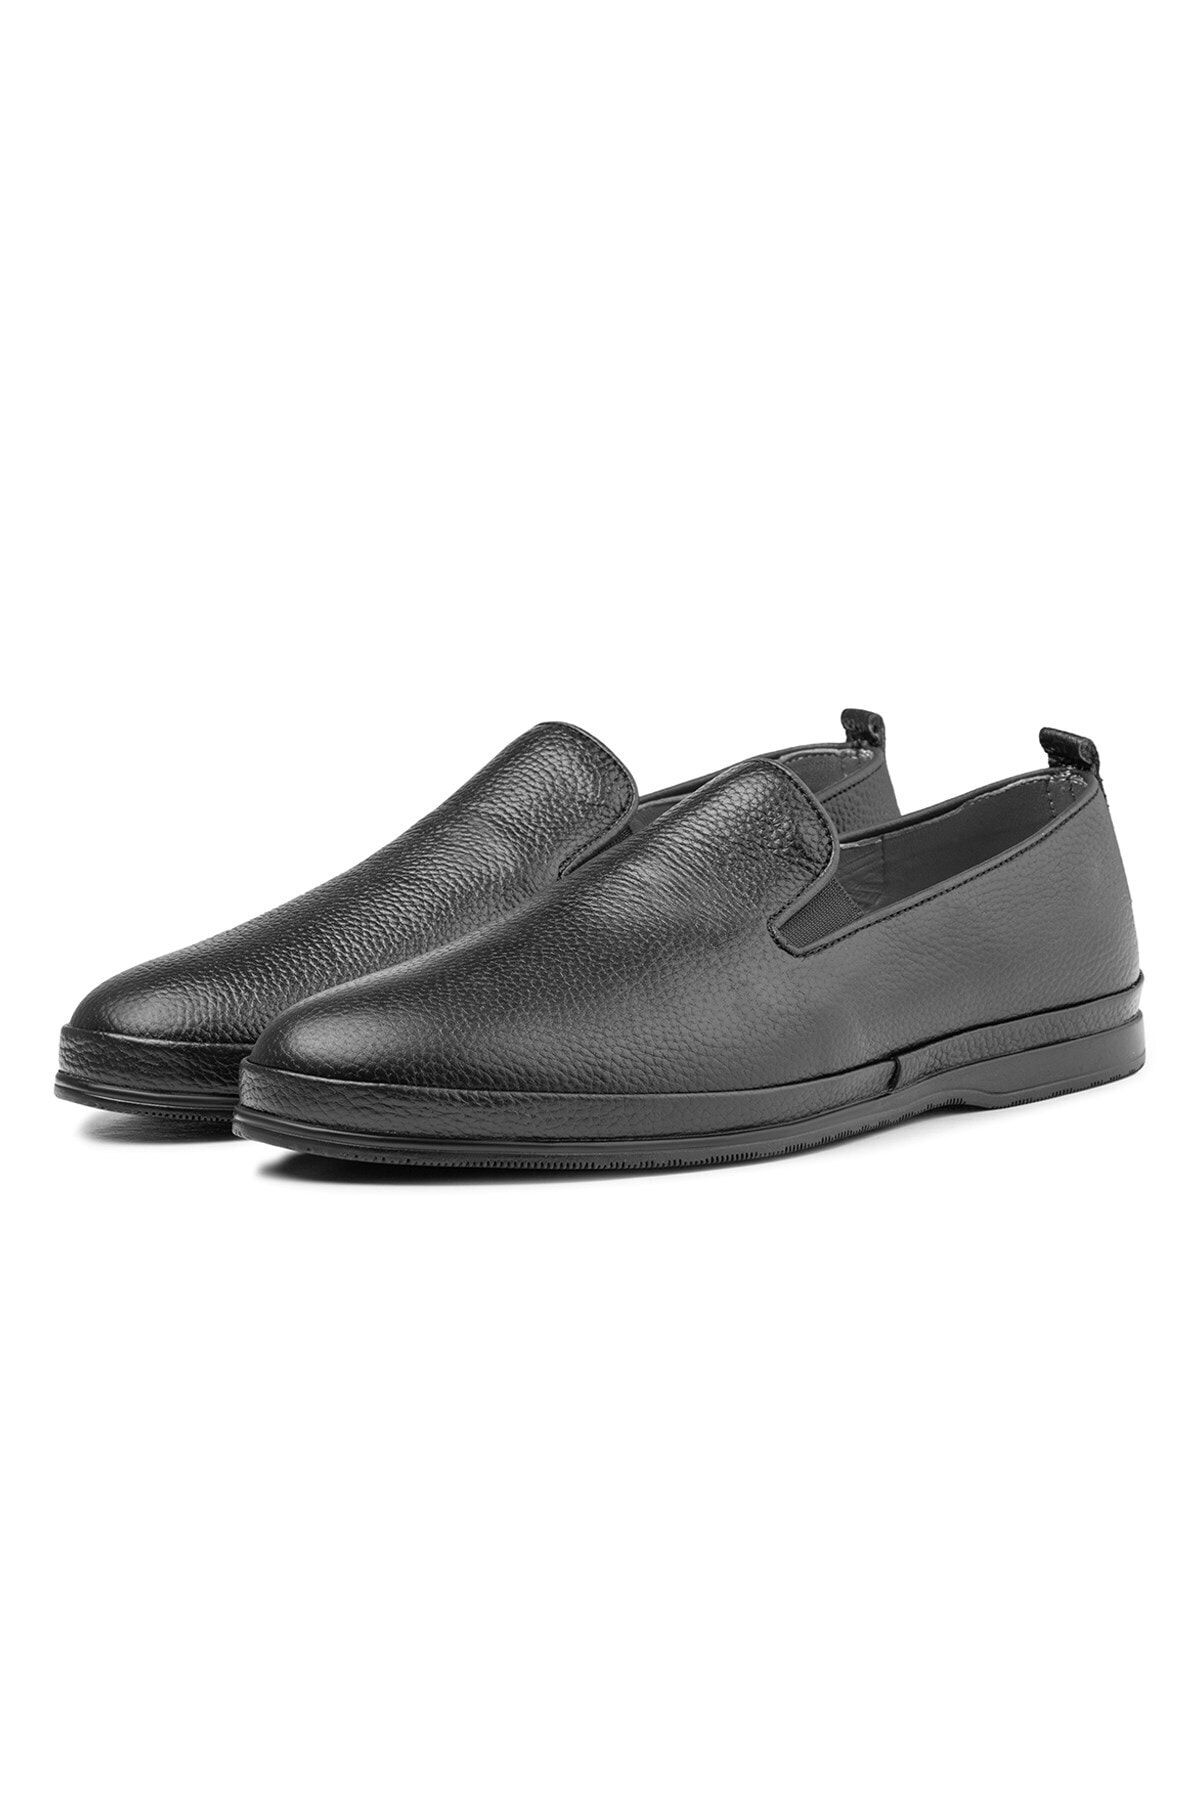 Ducavelli Kante Hakiki Deri Comfort Ortopedik Erkek Günlük Ayakkabı, Baba Ayakkabısı, Ortopedik Ayakkabı, Loaf